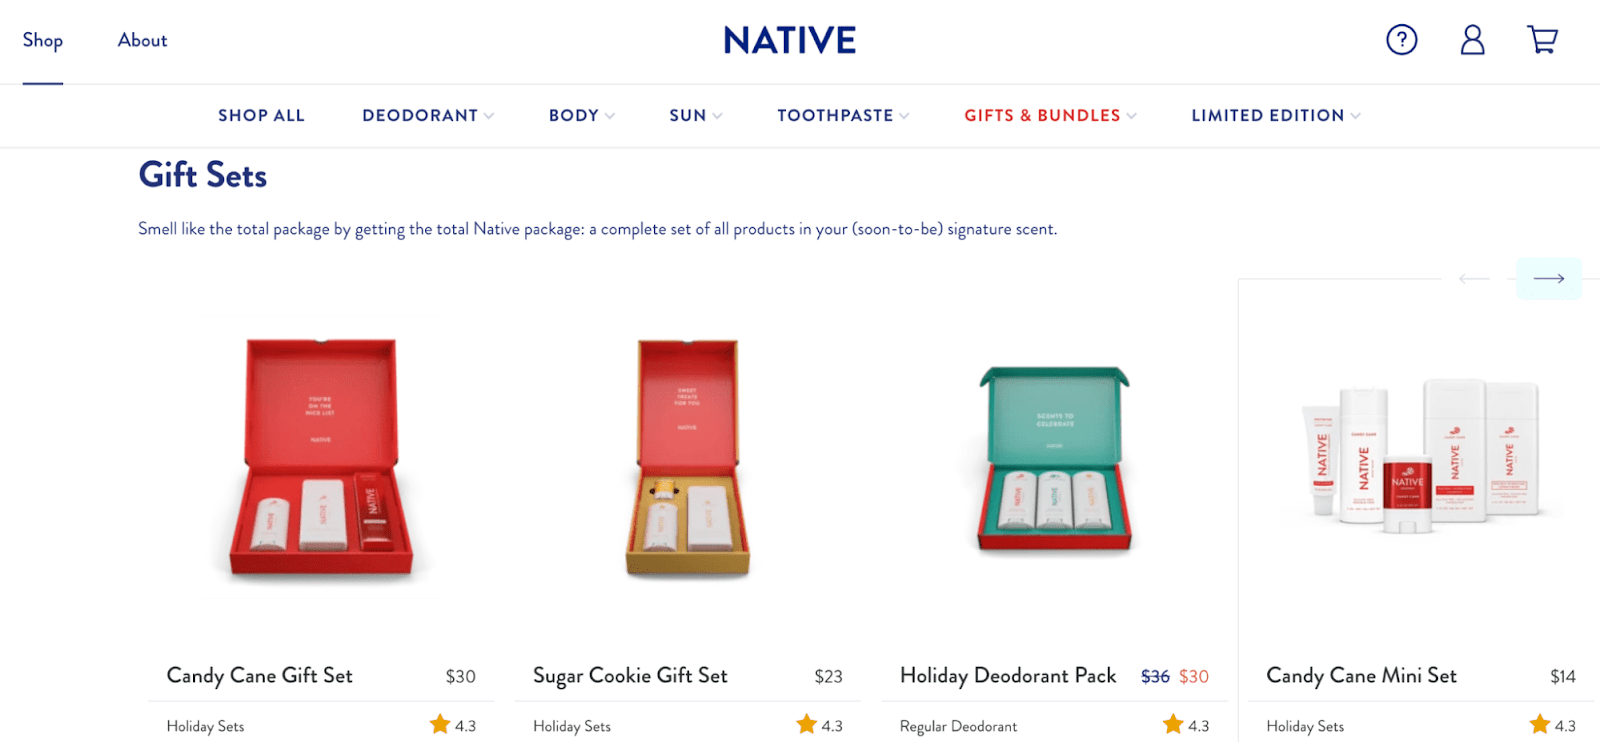 native brand seasonal bundling and packaging